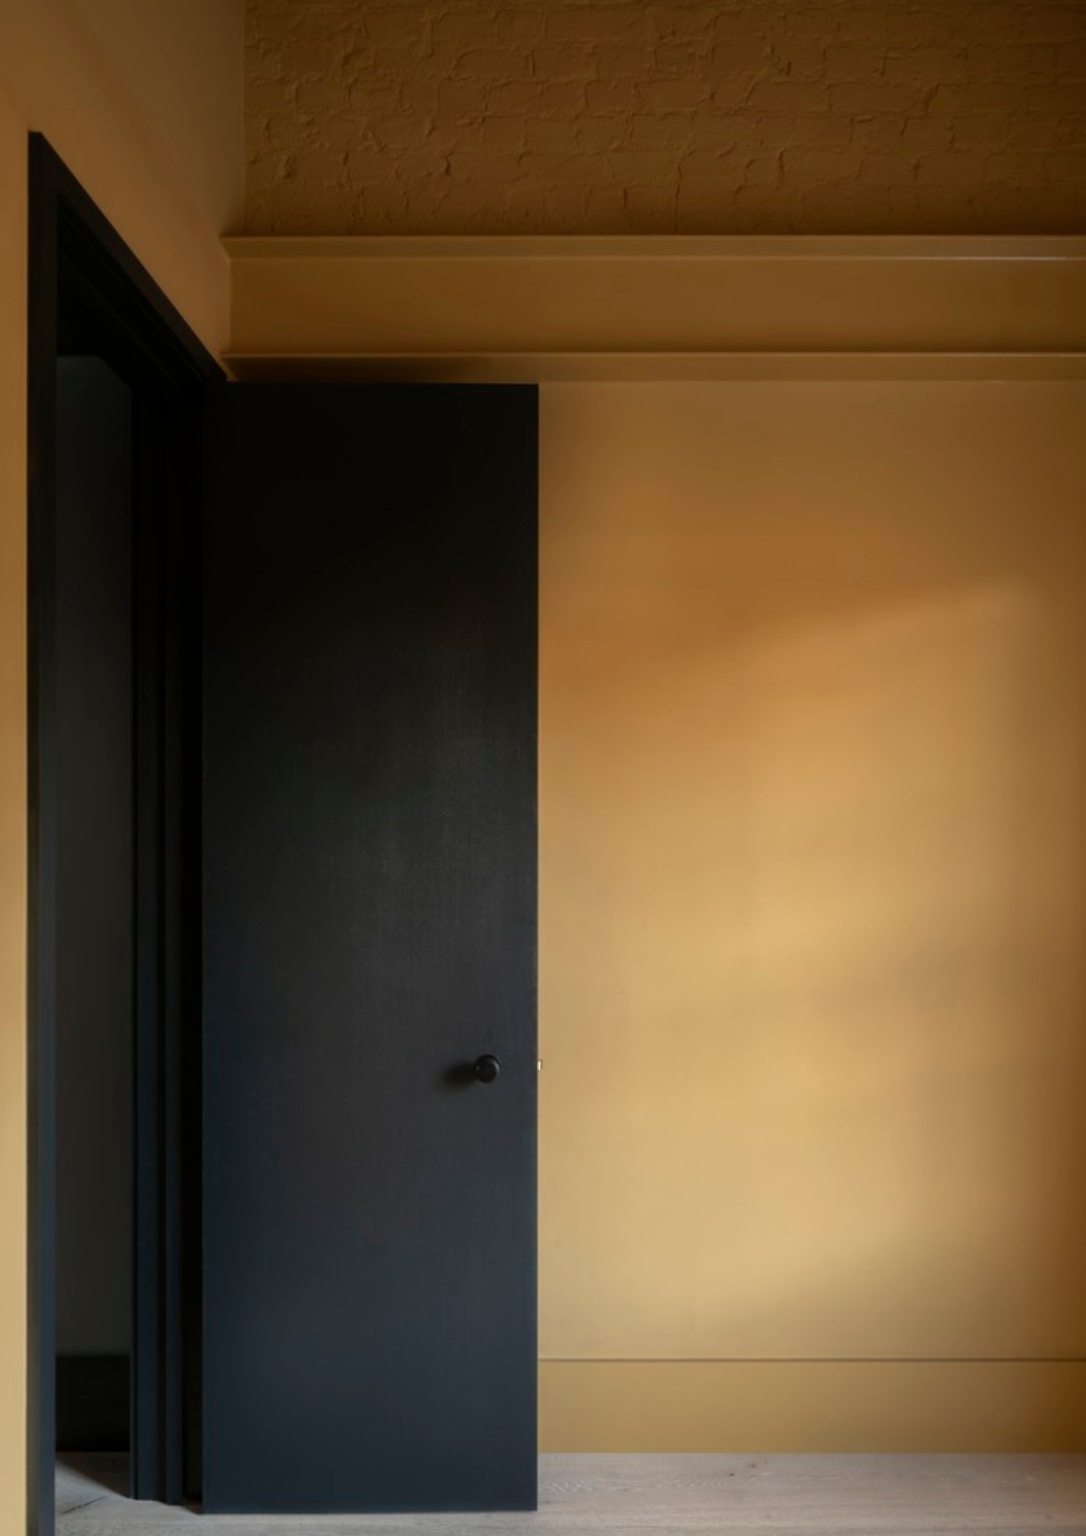 a dark open door against and orange wall